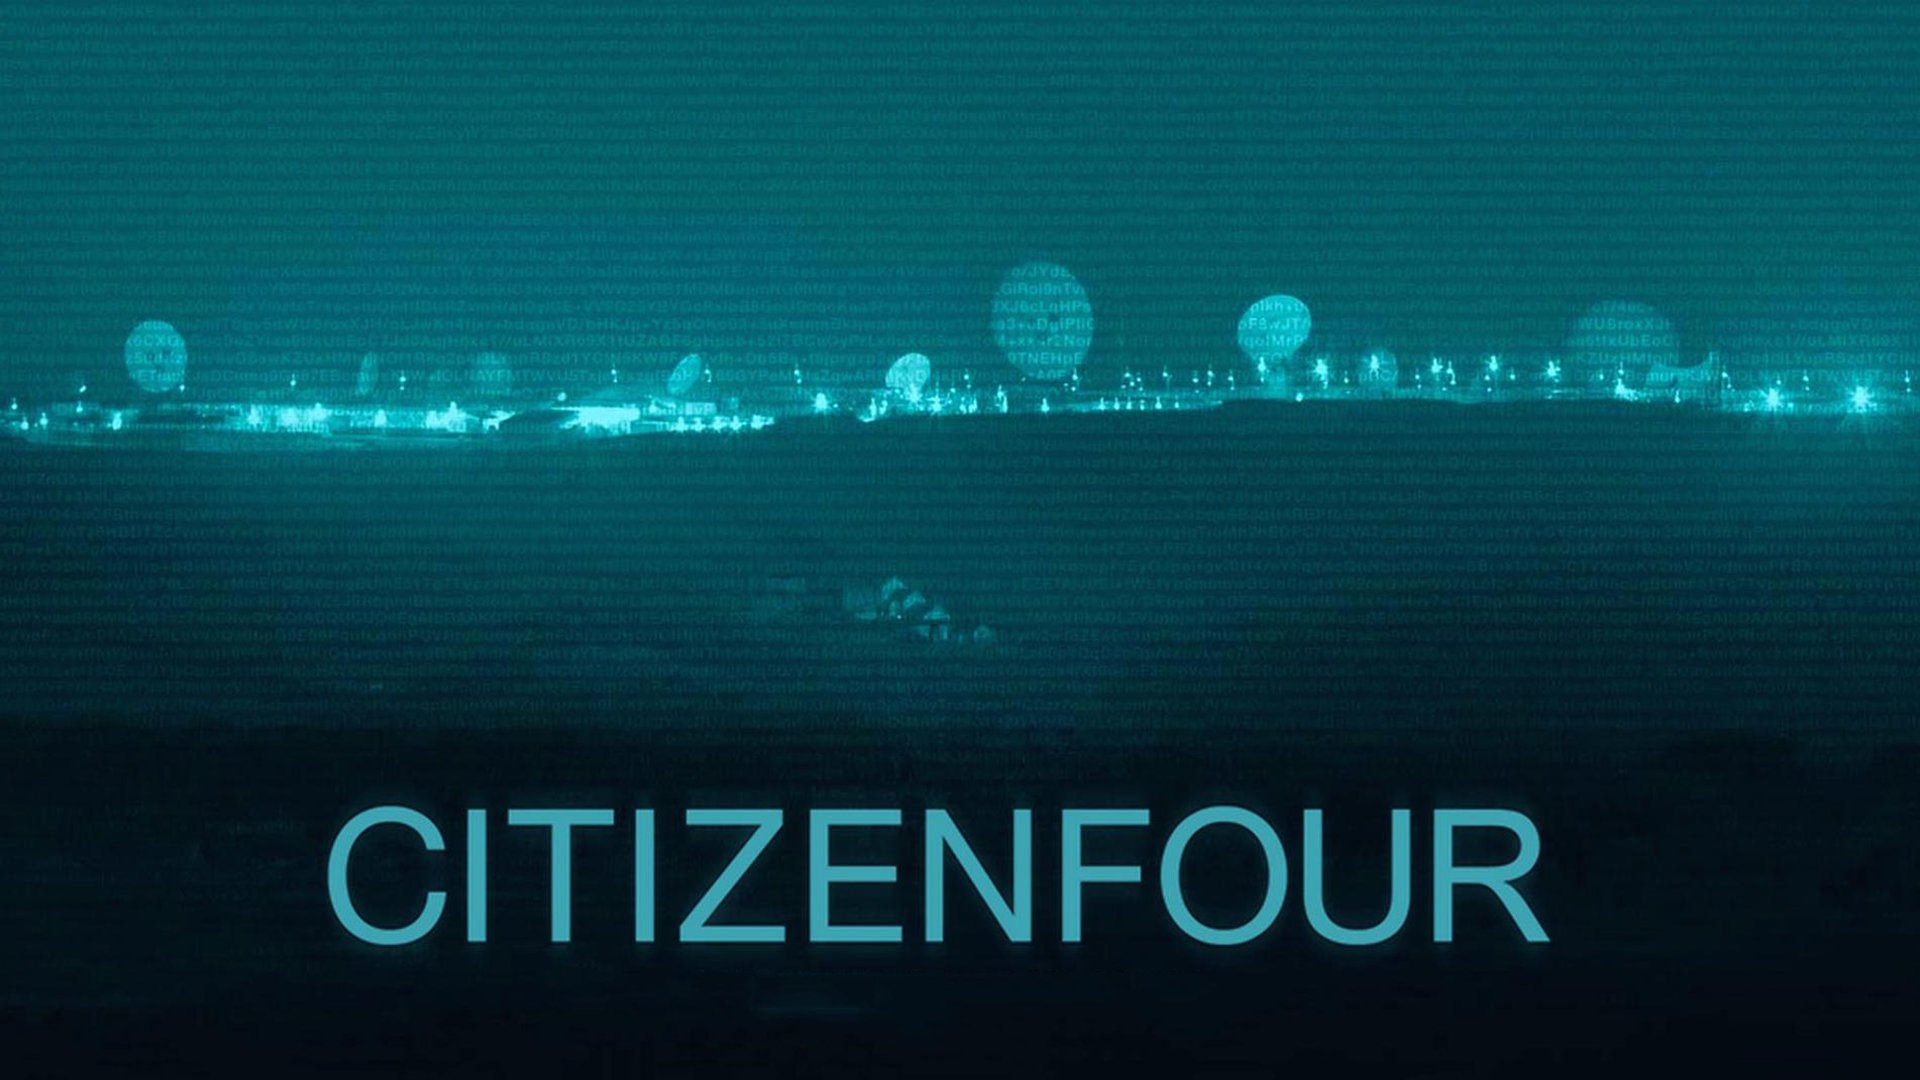 Citizenfour (2014) - Titlovi.com